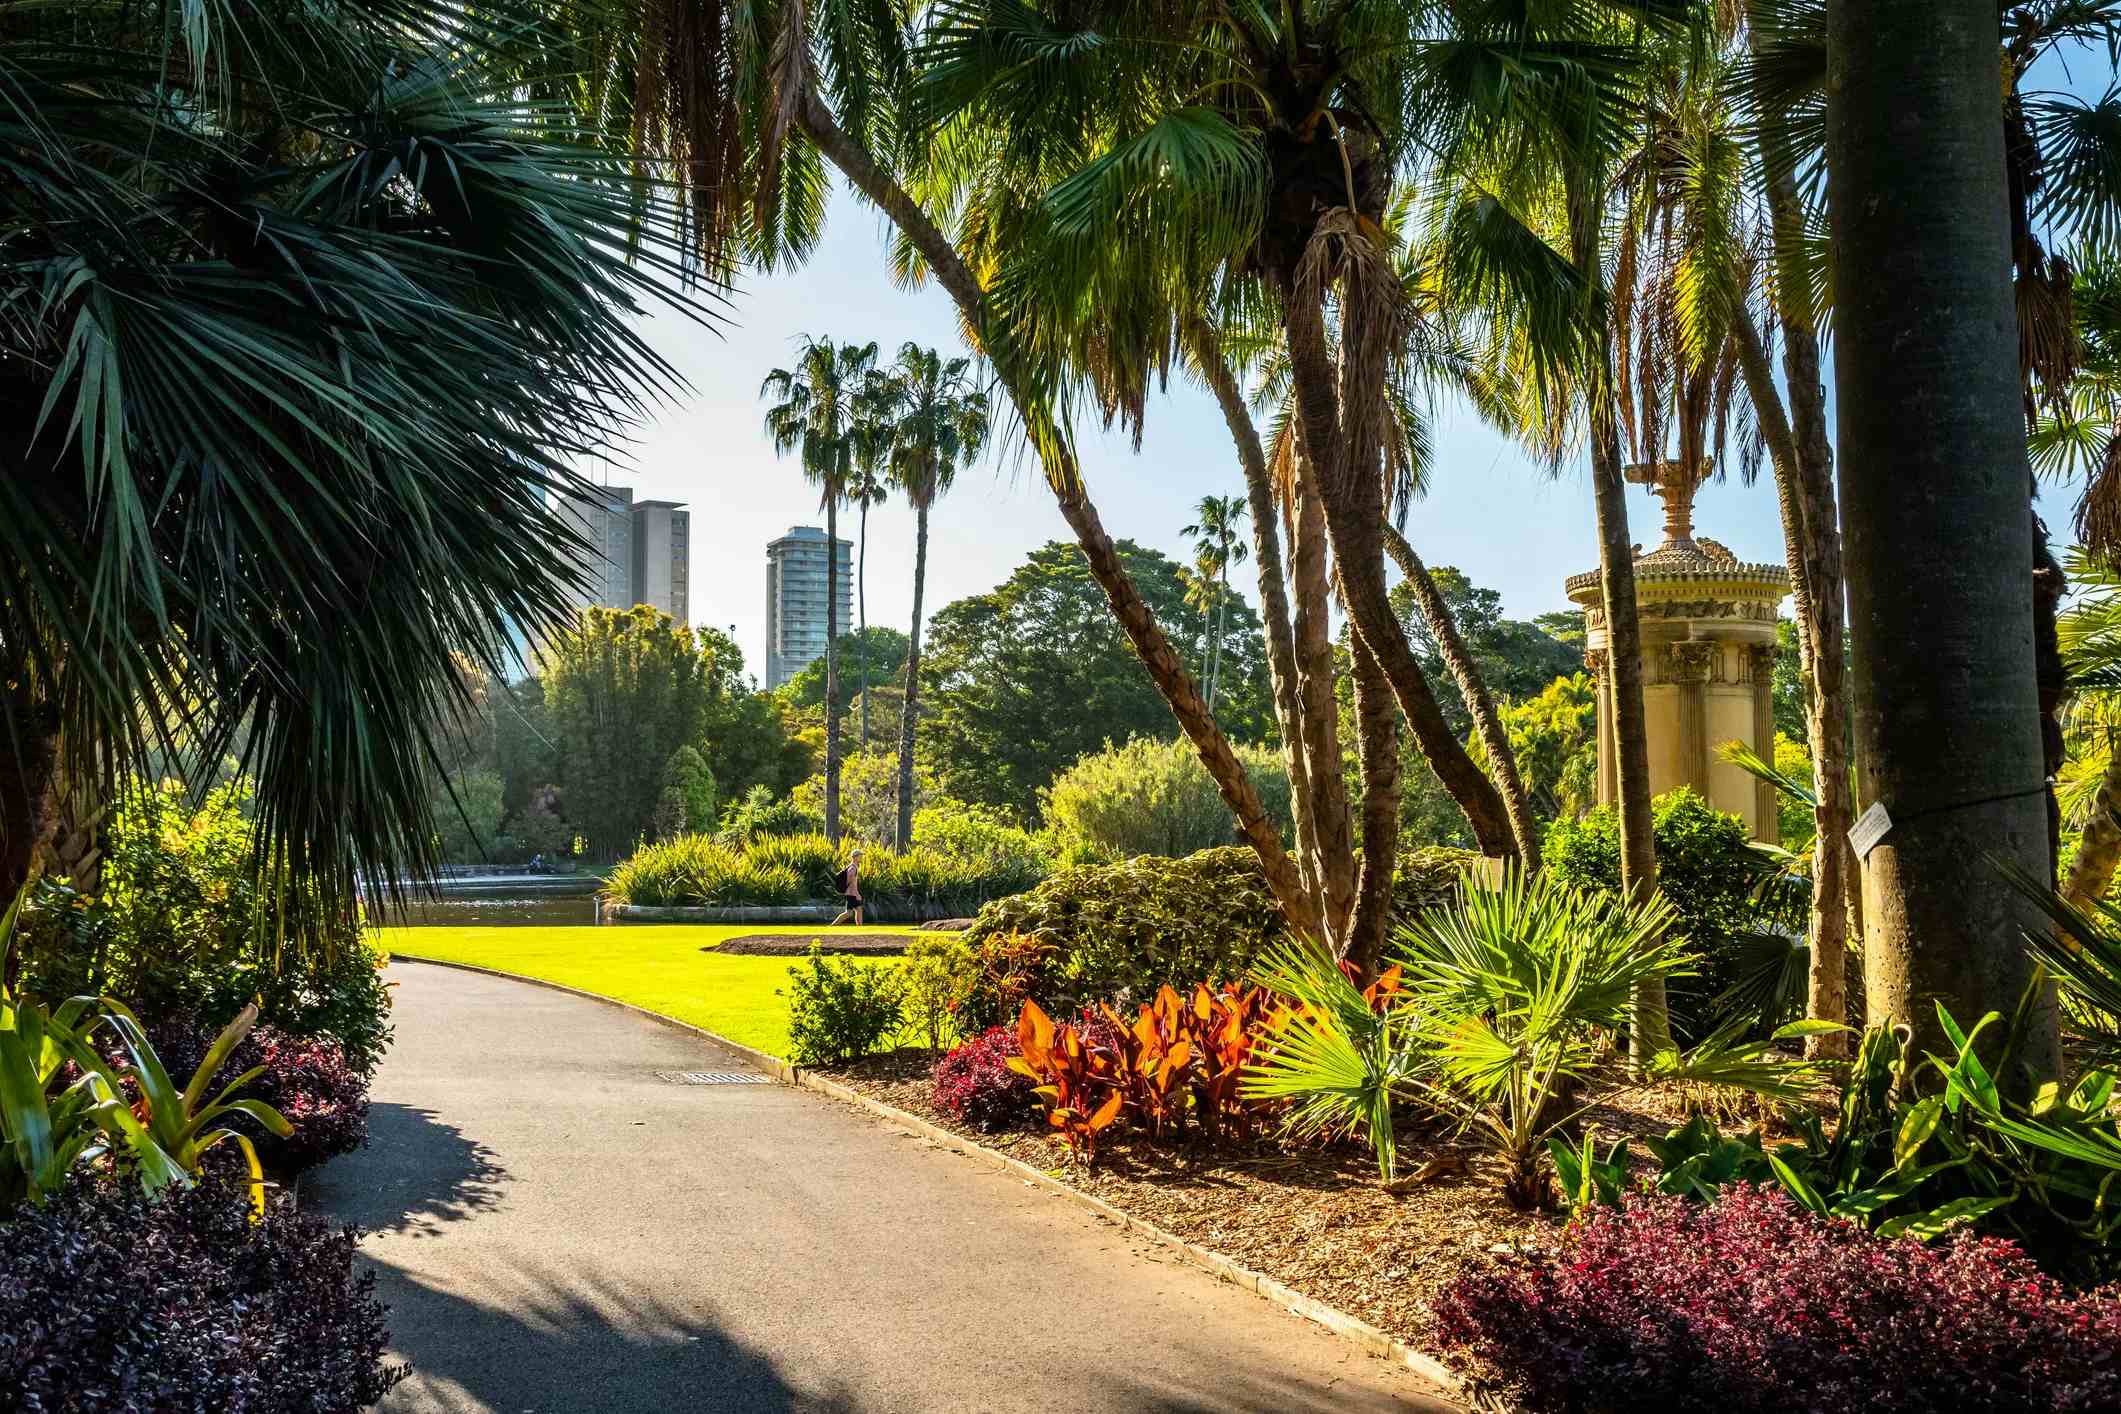 Jardins botaniques royaux de Sydney image